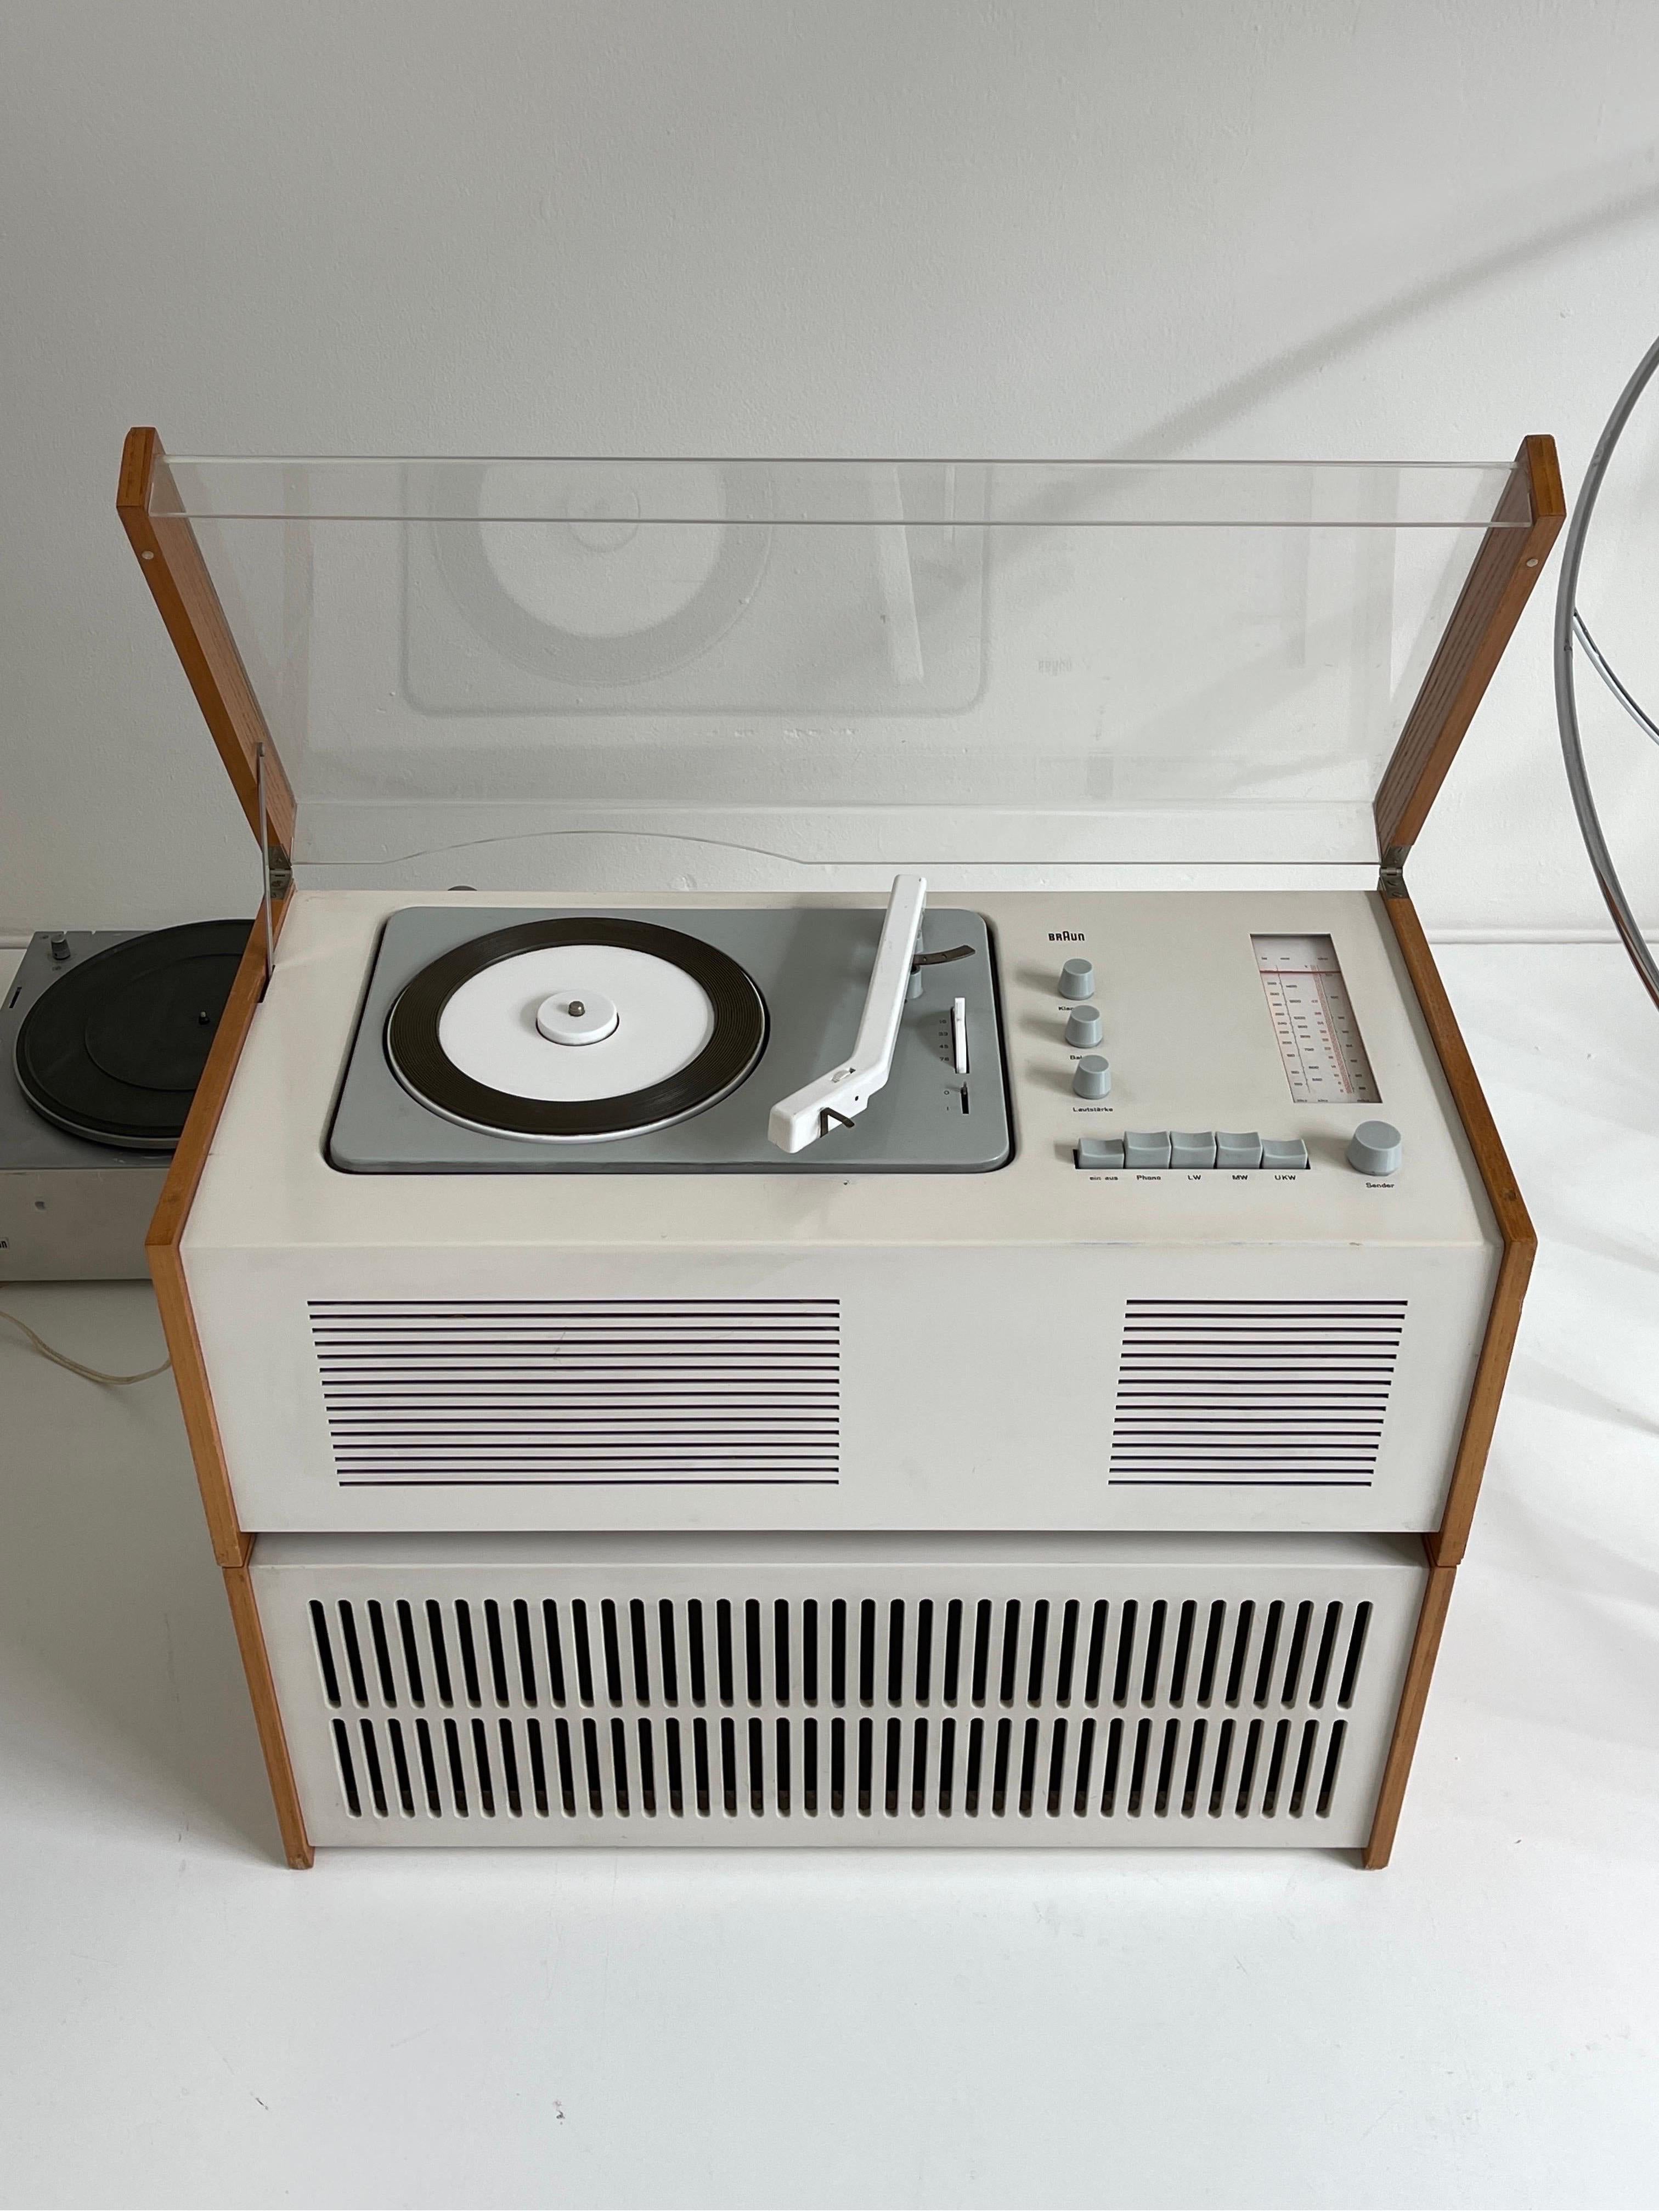 Braun SK61 Plattenspieler, entworfen von Dieter Rams und Hans Hugelot, 1961. Ausgestattet mit Plattenspieler und AM/FM-Radio. Braun L1-Lautsprecher aus den 1950er Jahren enthalten. In gutem Vintage-Zustand. Es ist voll funktionsfähig und wurde von